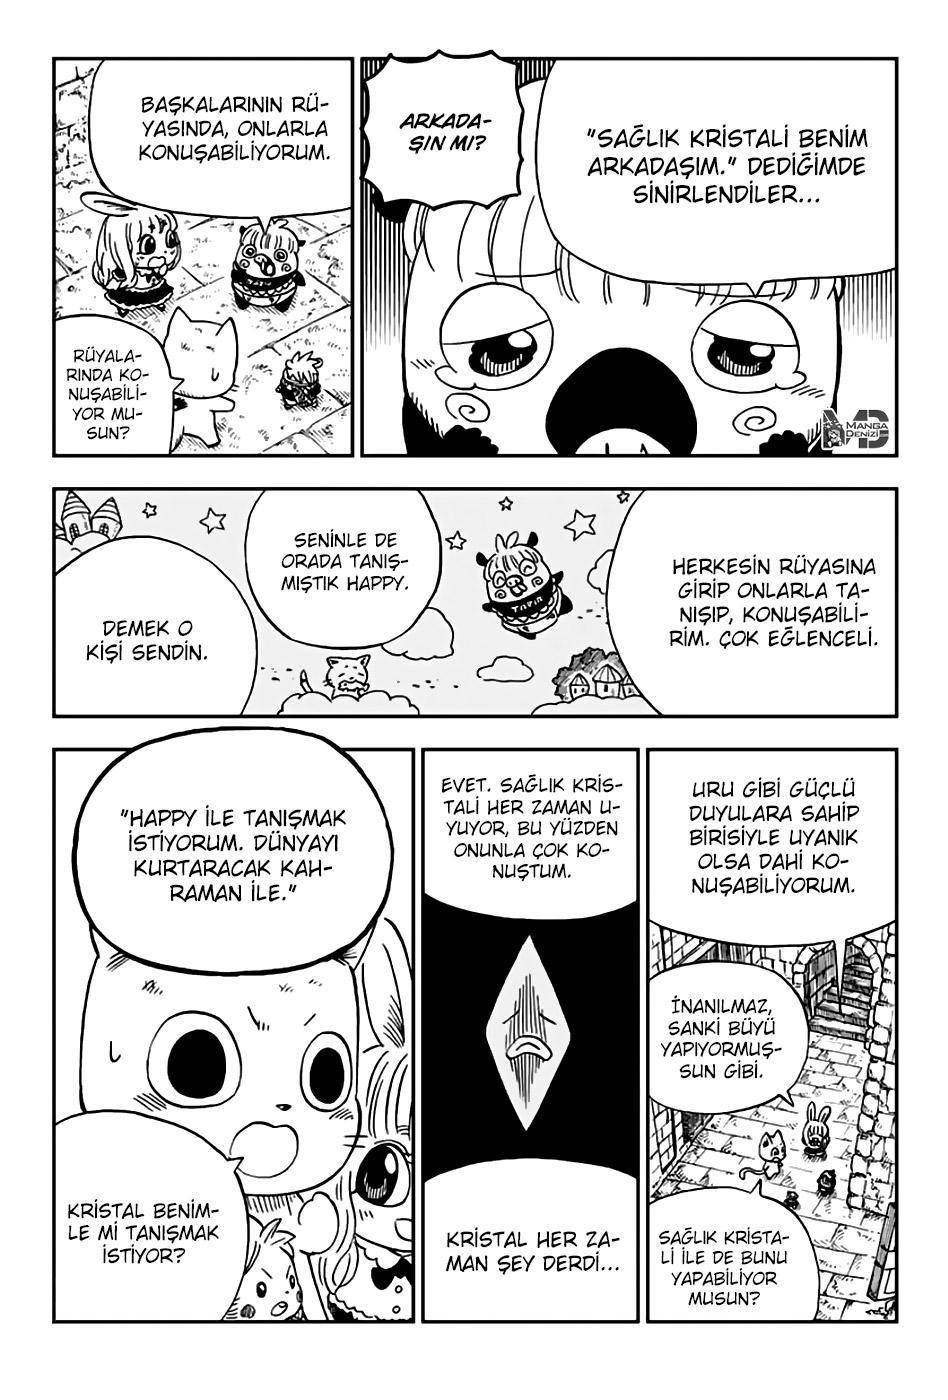 Fairy Tail: Happy's Great Adventure mangasının 46 bölümünün 3. sayfasını okuyorsunuz.